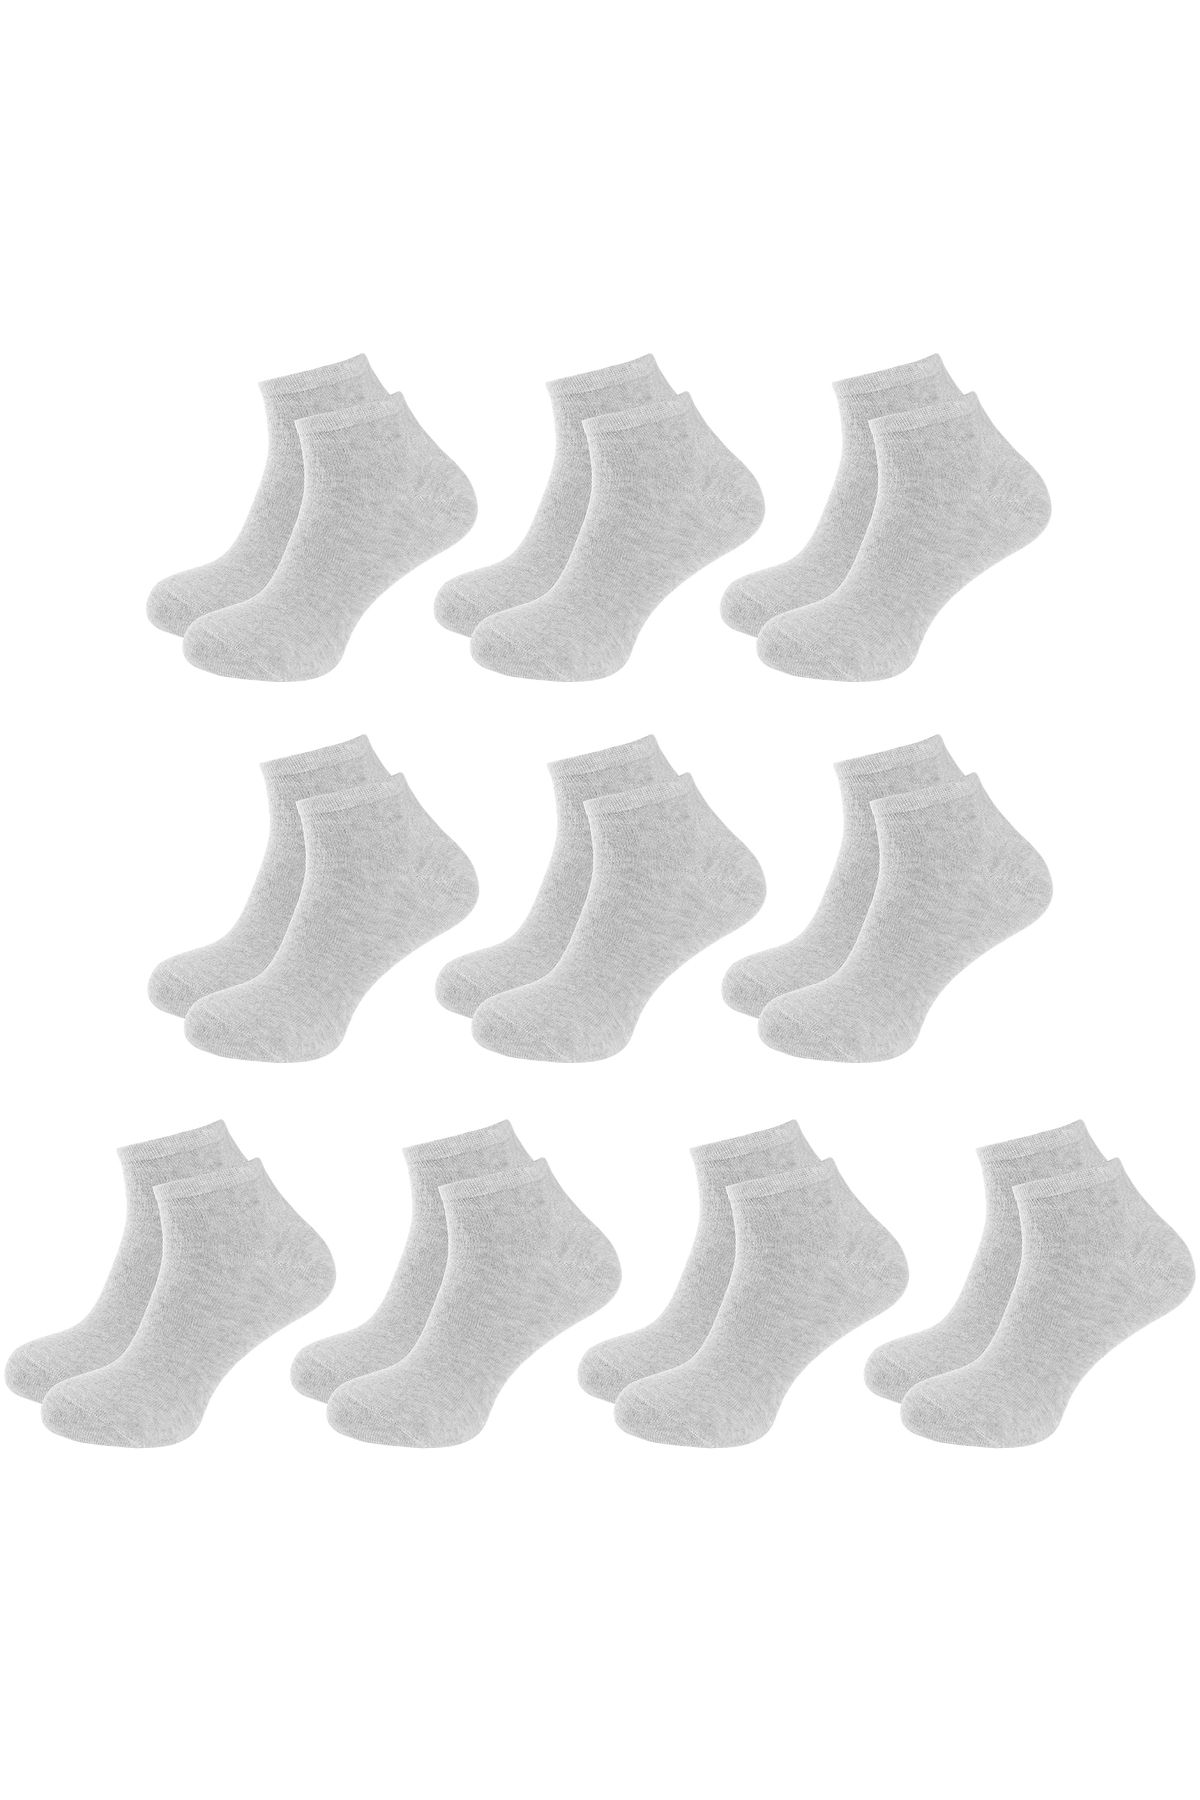 ANTHONY JACKSON 10 Çift Kutulu BAMBU Premium Bay-Bayan Patik Çorap - Bilek Boy Kısa Spor Koşu ve Yürüyüş Çorabı